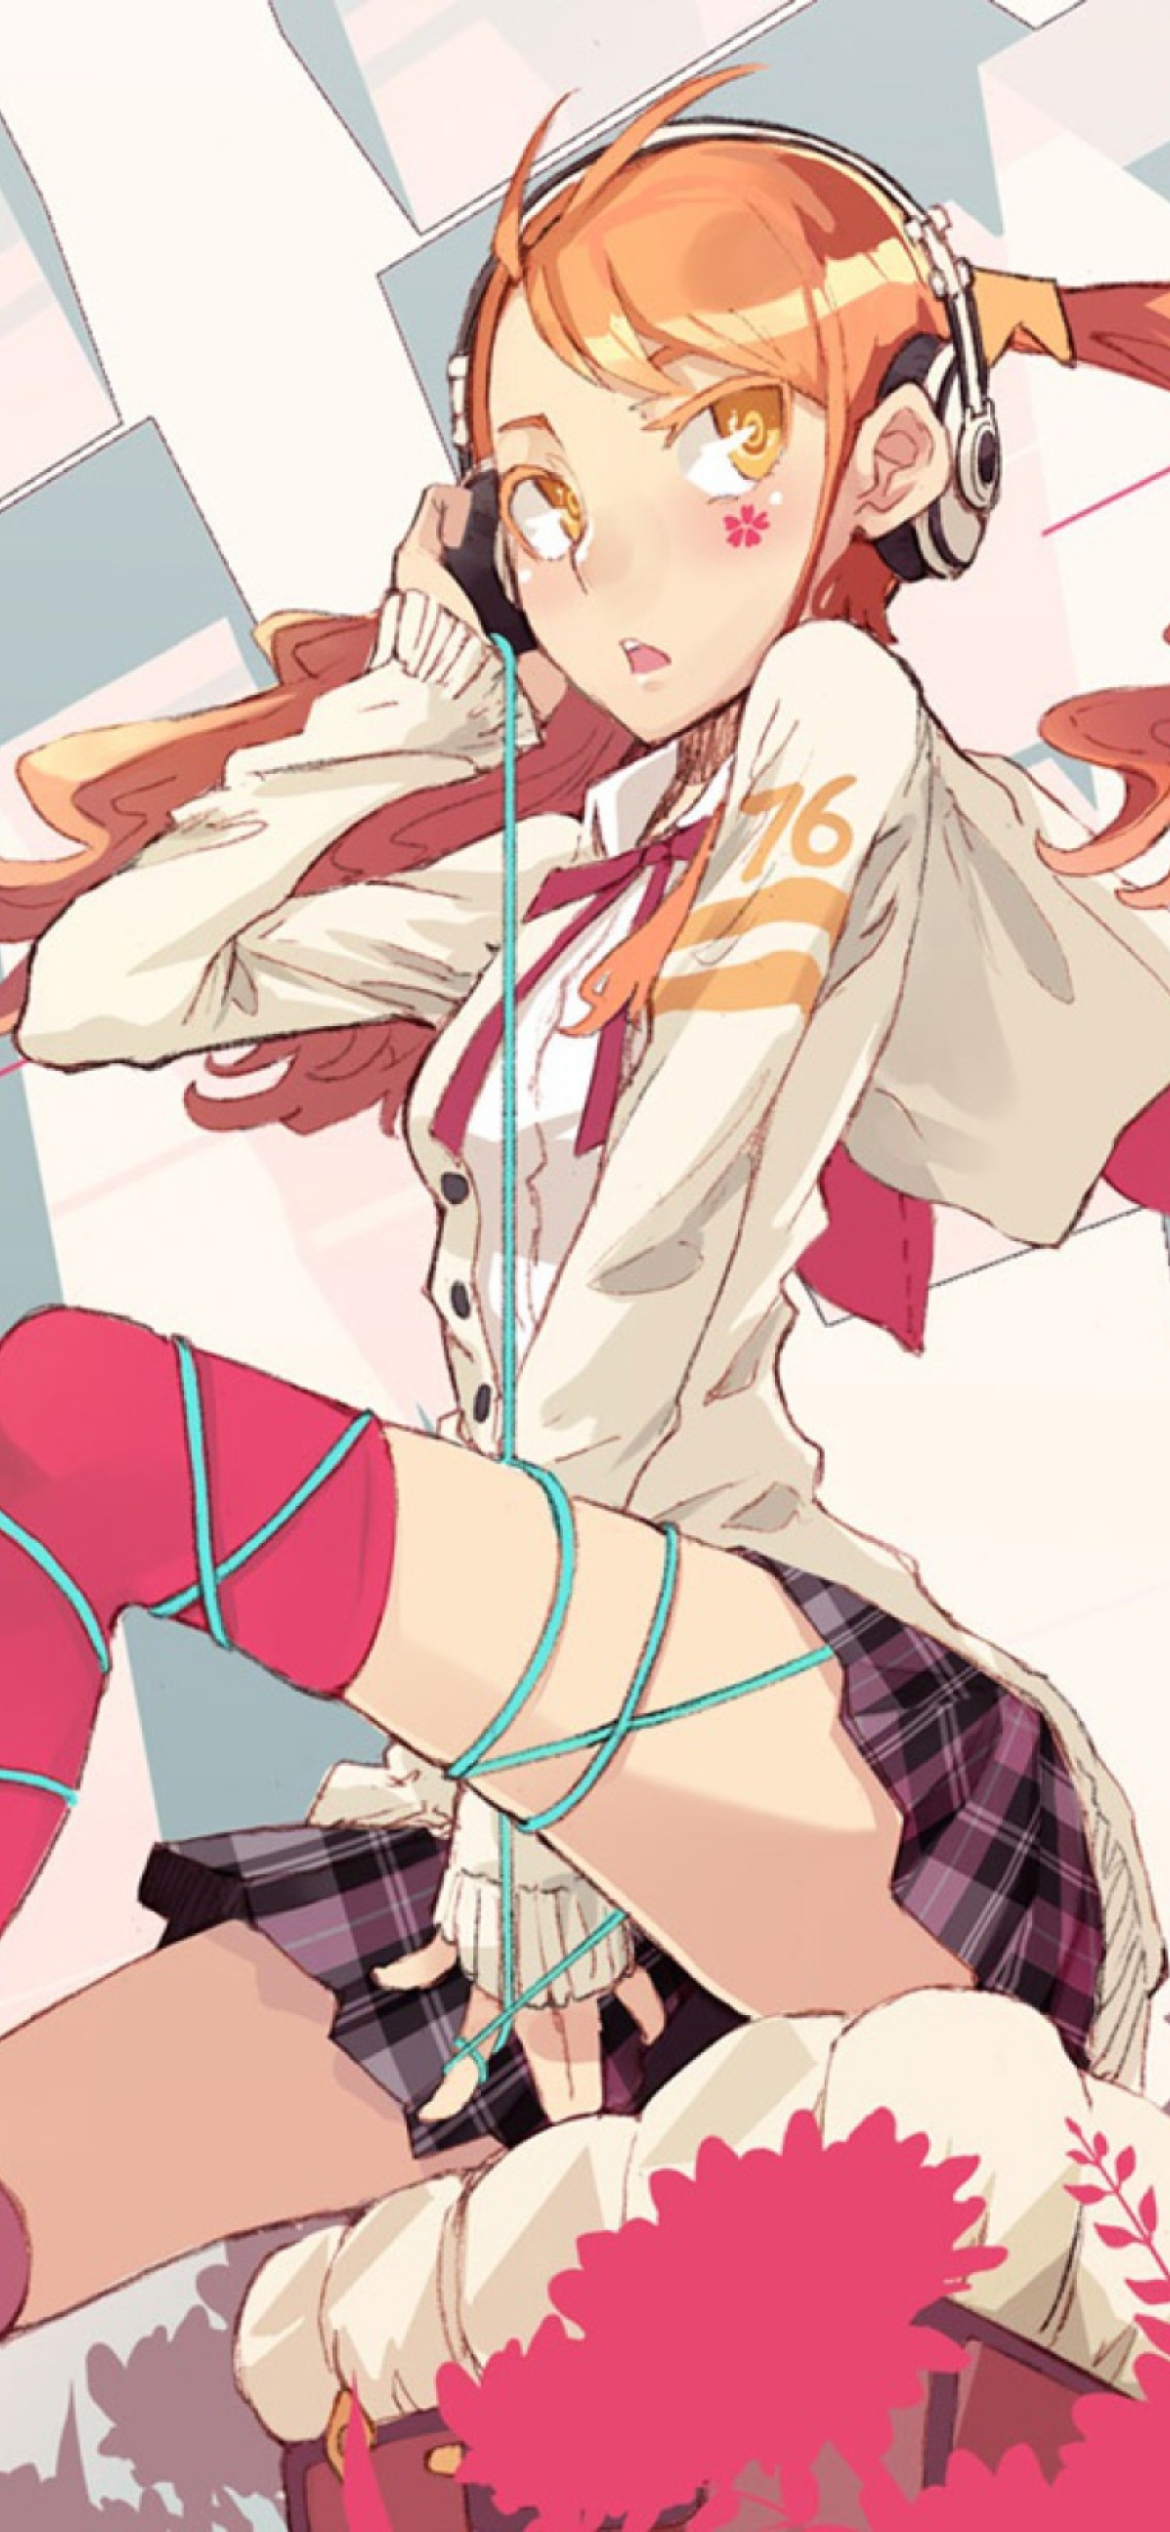 Anime Girl wallpaper 1170x2532